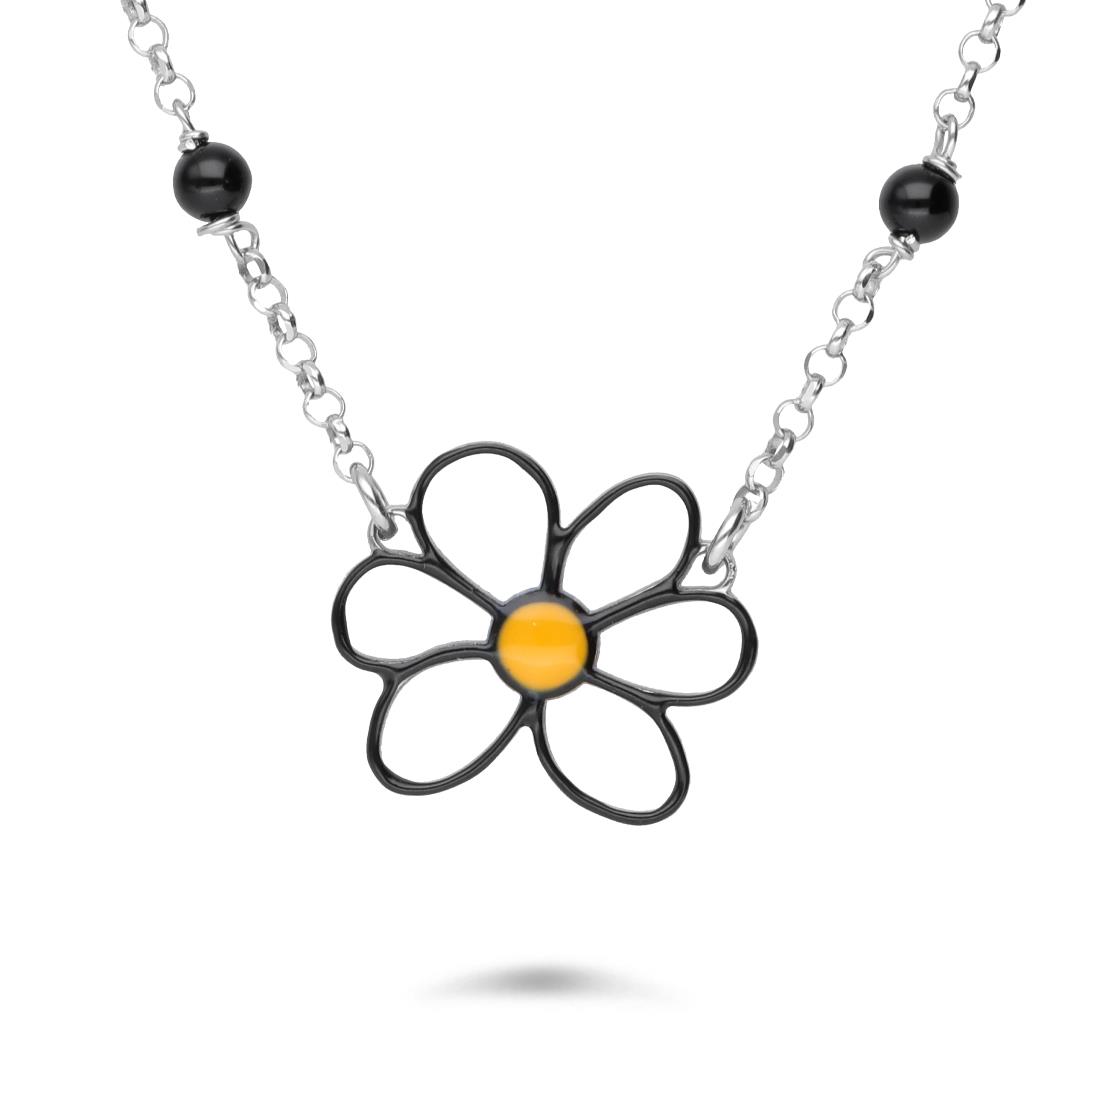 Silver necklace with black petals daisy - GURU